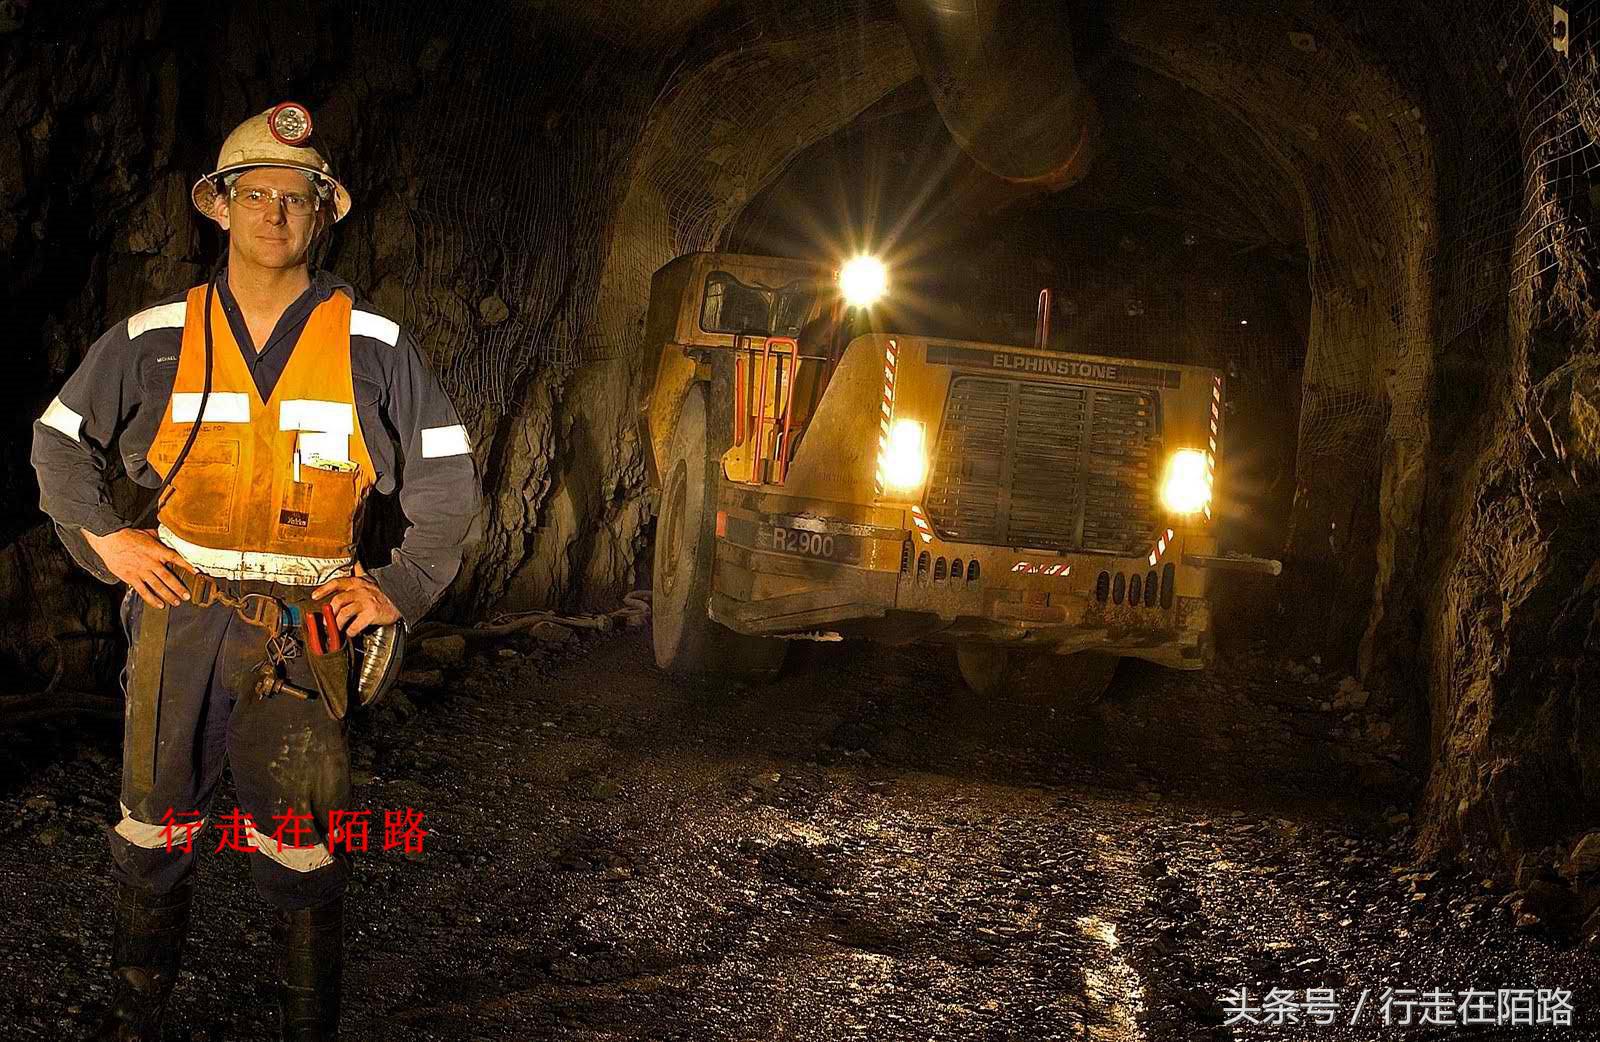 保底年薪50万:澳洲面向全球招聘矿工,无需